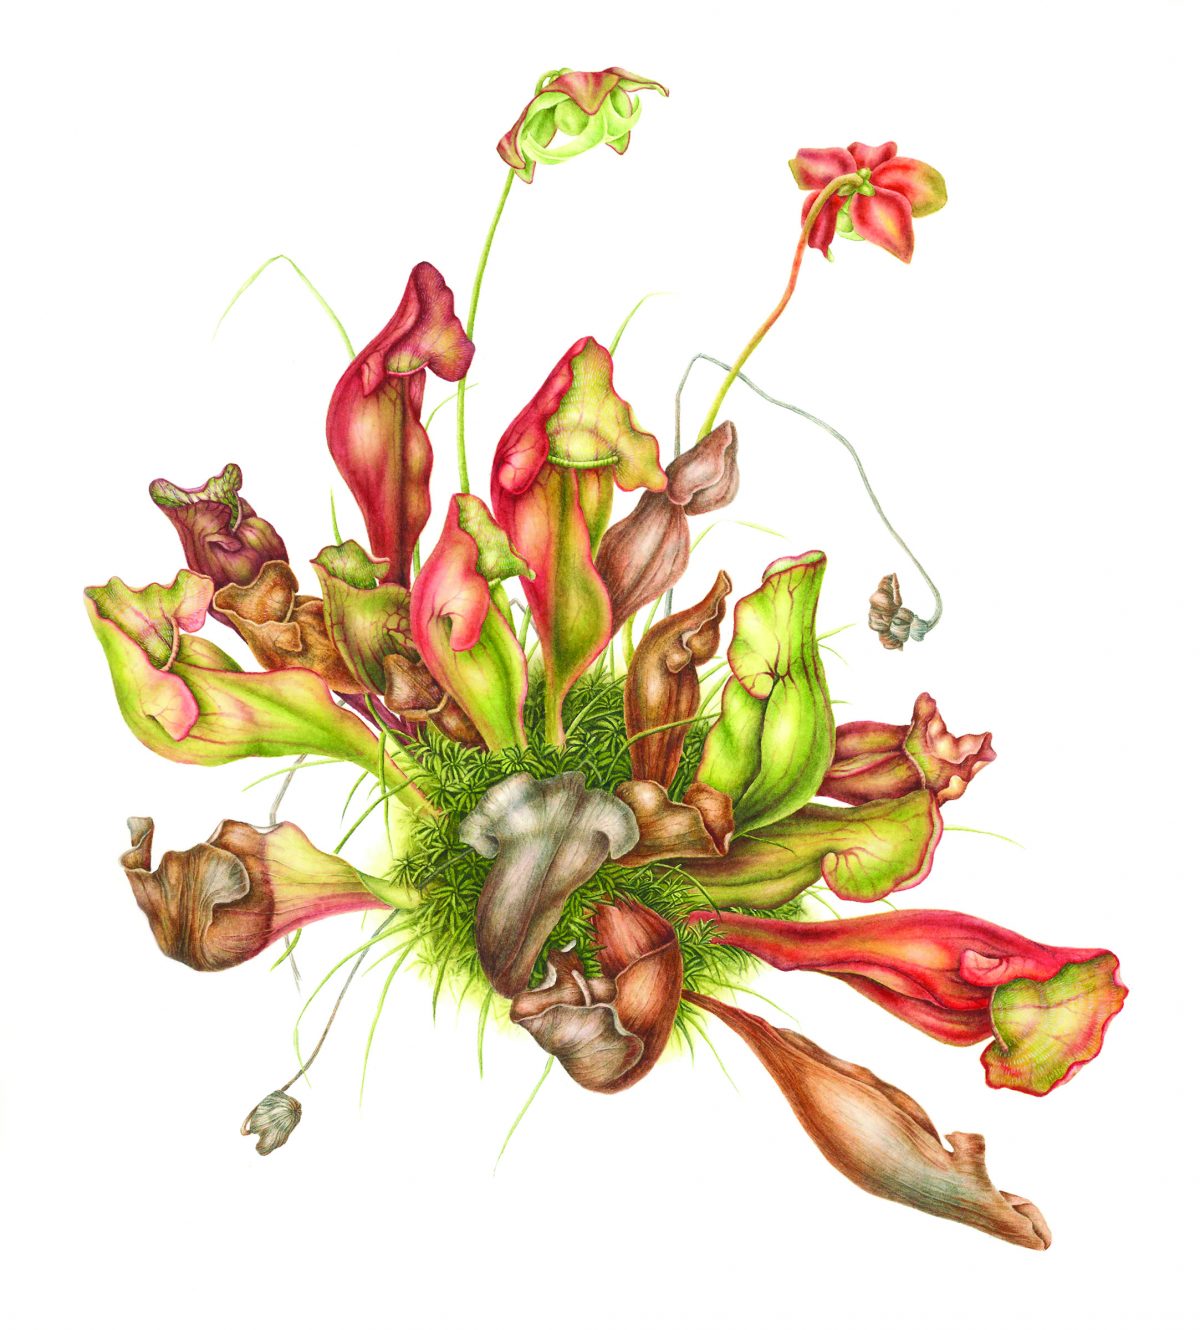 Tranh minh họa “Cây Nắp Ấm Tím (Sarracenia purpurea)” của họa sĩ Betsy Rogers-Knox, năm 2017. Tranh màu nước trên giấy, kích cỡ 17 ½ inch x 16 inch. (Ảnh: Betsy Rogers-Knox)